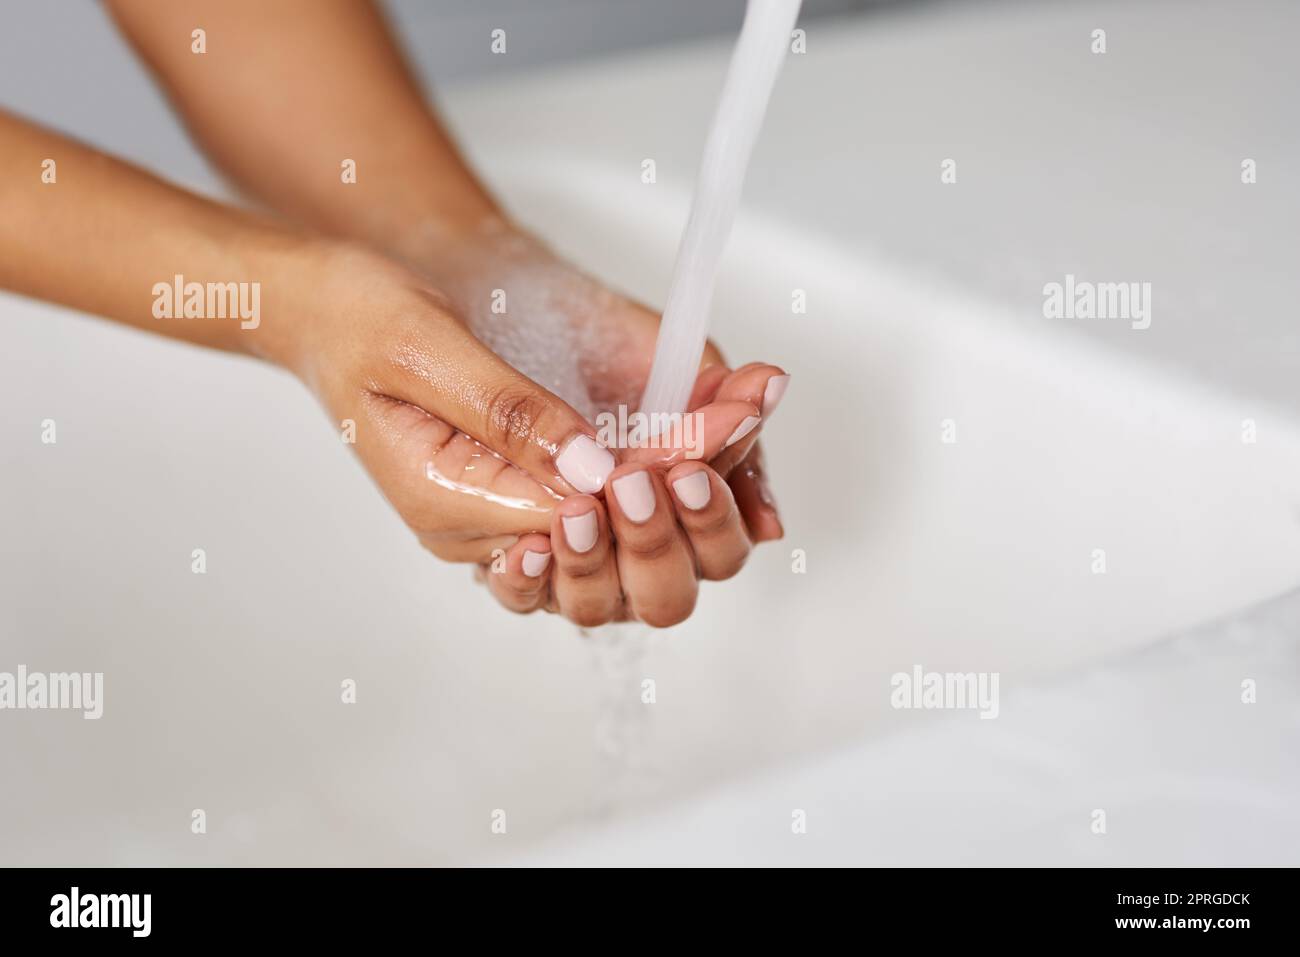 Aufrechterhaltung von Sauberkeit und Hygiene. Hände werden unter fließendem Wasser gewaschen. Stockfoto